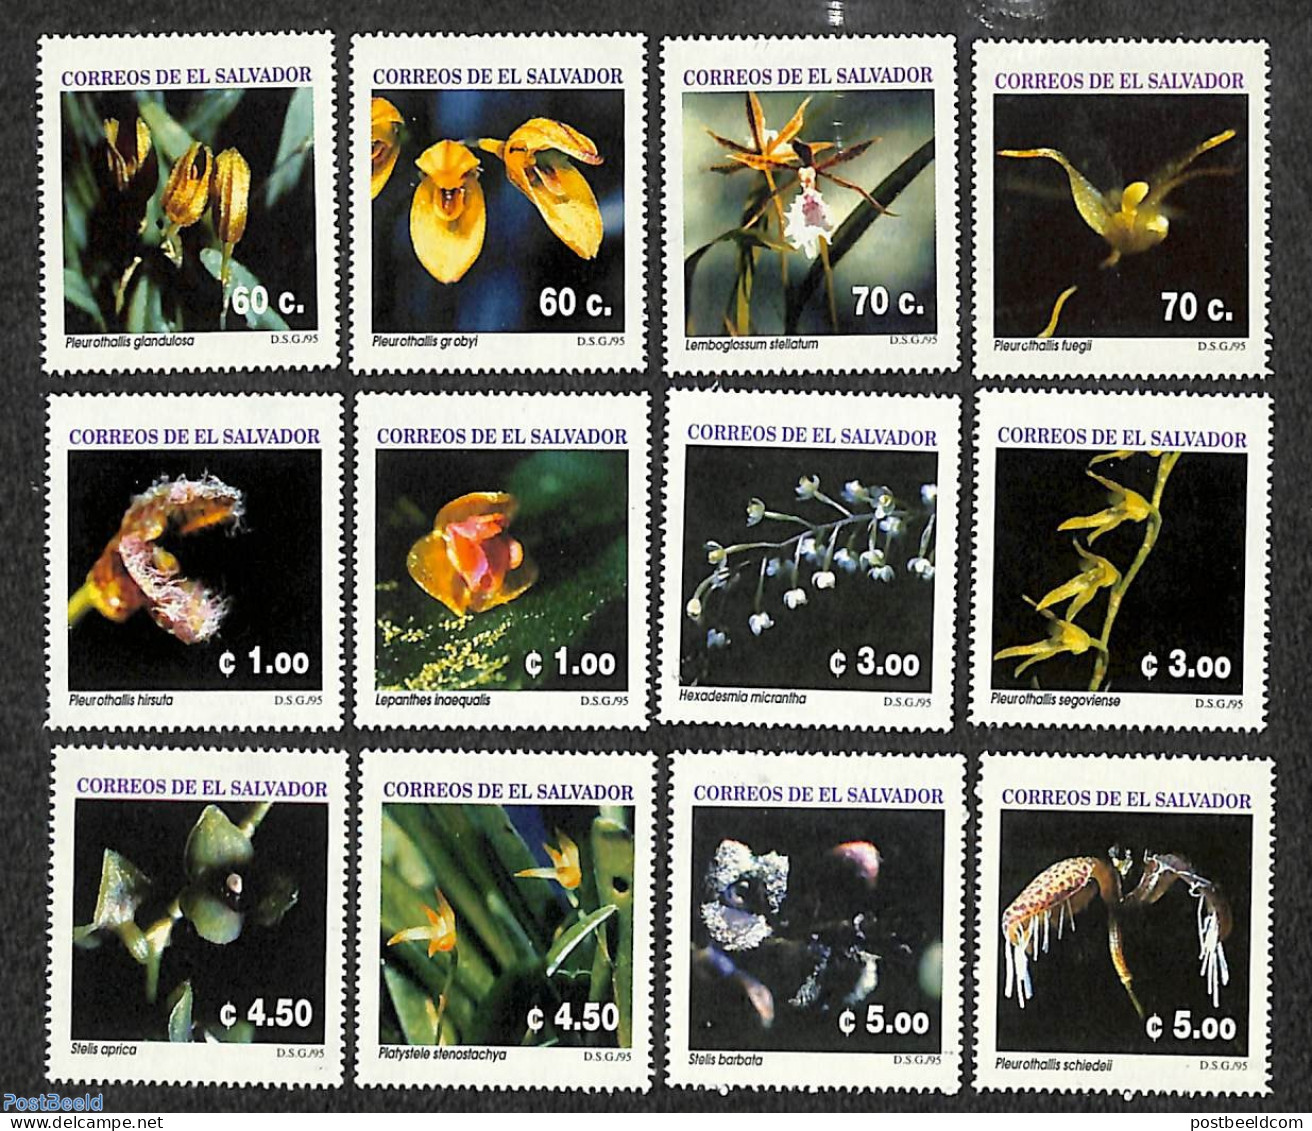 El Salvador 1995 Orchids 12v, Mint NH, Nature - Flowers & Plants - Orchids - El Salvador